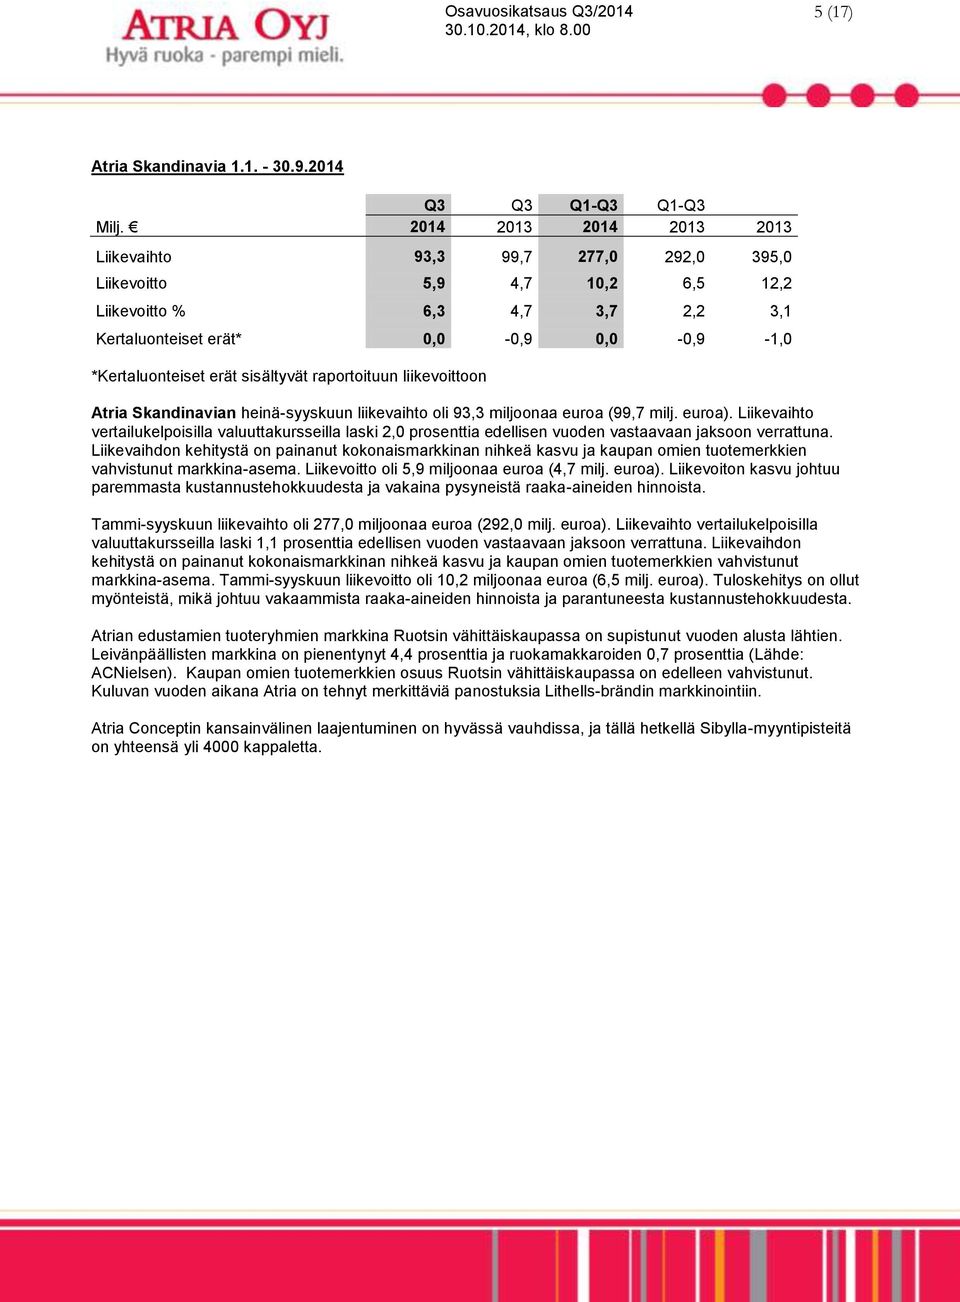 sisältyvät raportoituun liikevoittoon Atria Skandinavian heinä-syyskuun liikevaihto oli 93,3 miljoonaa euroa (99,7 milj. euroa).